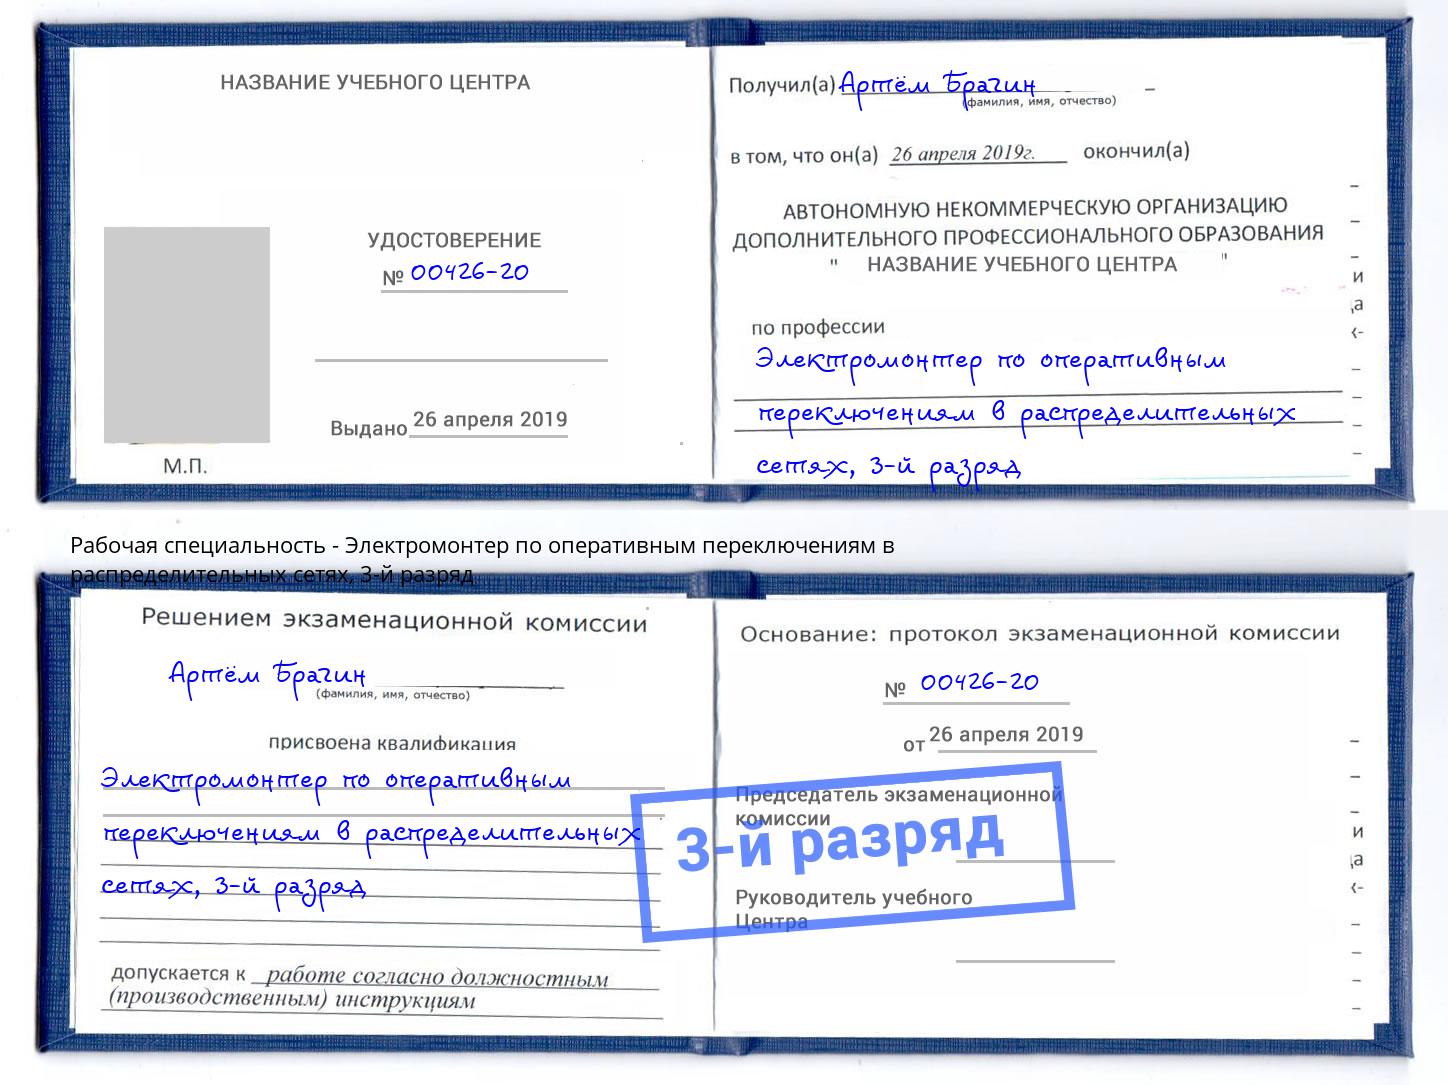 корочка 3-й разряд Электромонтер по оперативным переключениям в распределительных сетях Севастополь